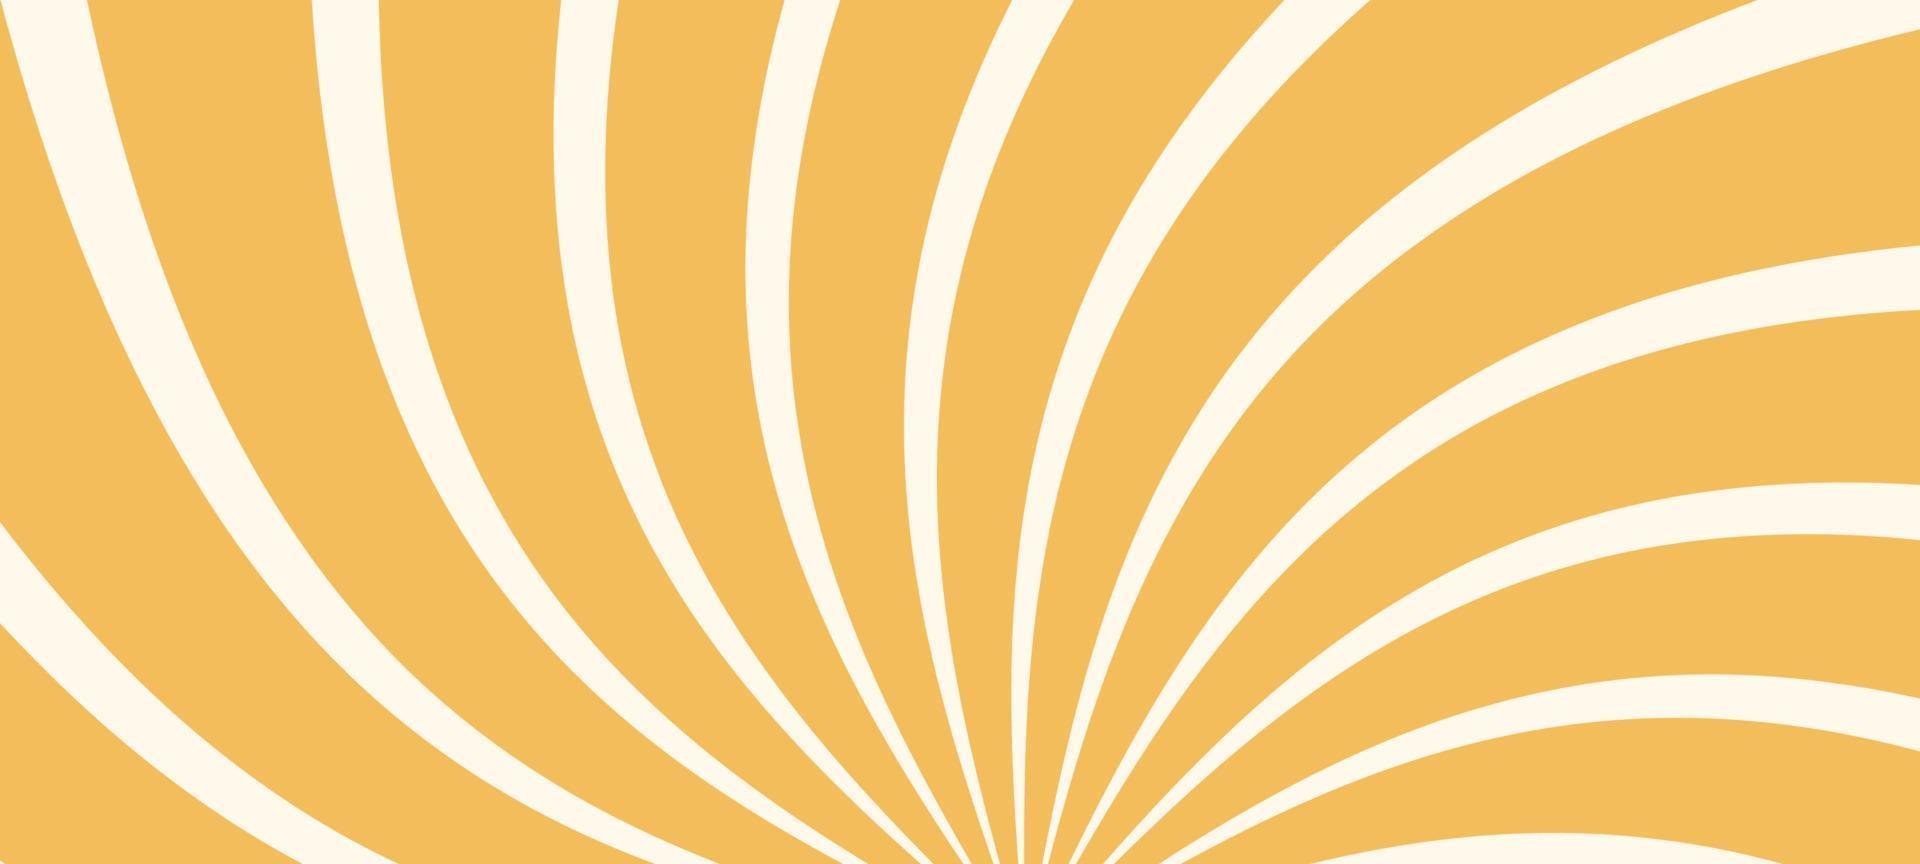 rayons de soleil fond de style rétro. motif lumineux jaune sunburst. illustration vectorielle vecteur